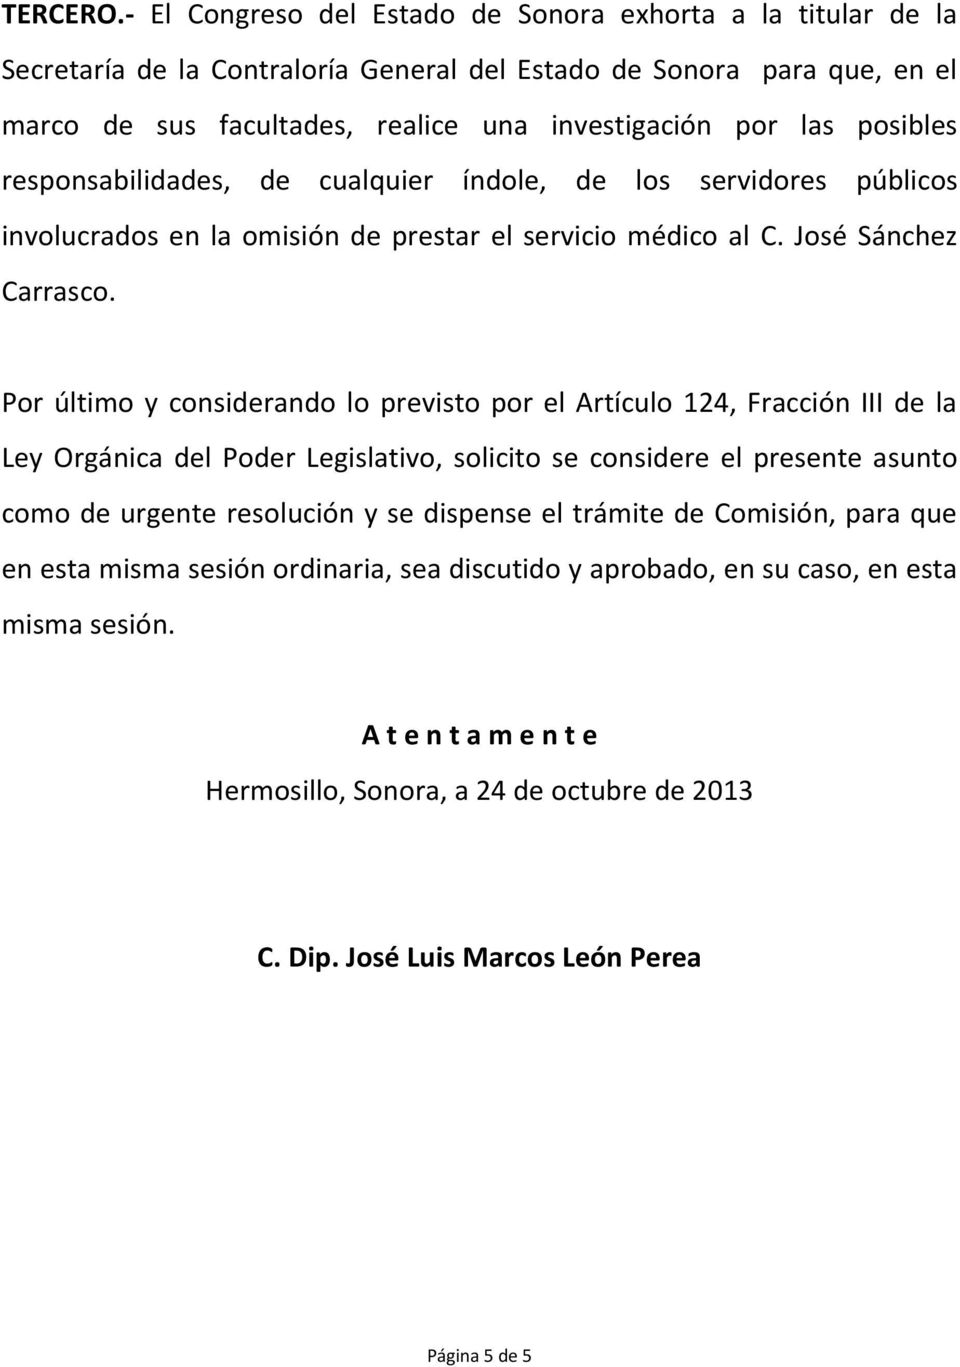 posibles responsabilidades, de cualquier índole, de los servidores públicos involucrados en la omisión de prestar el servicio médico al C. José Sánchez Carrasco.